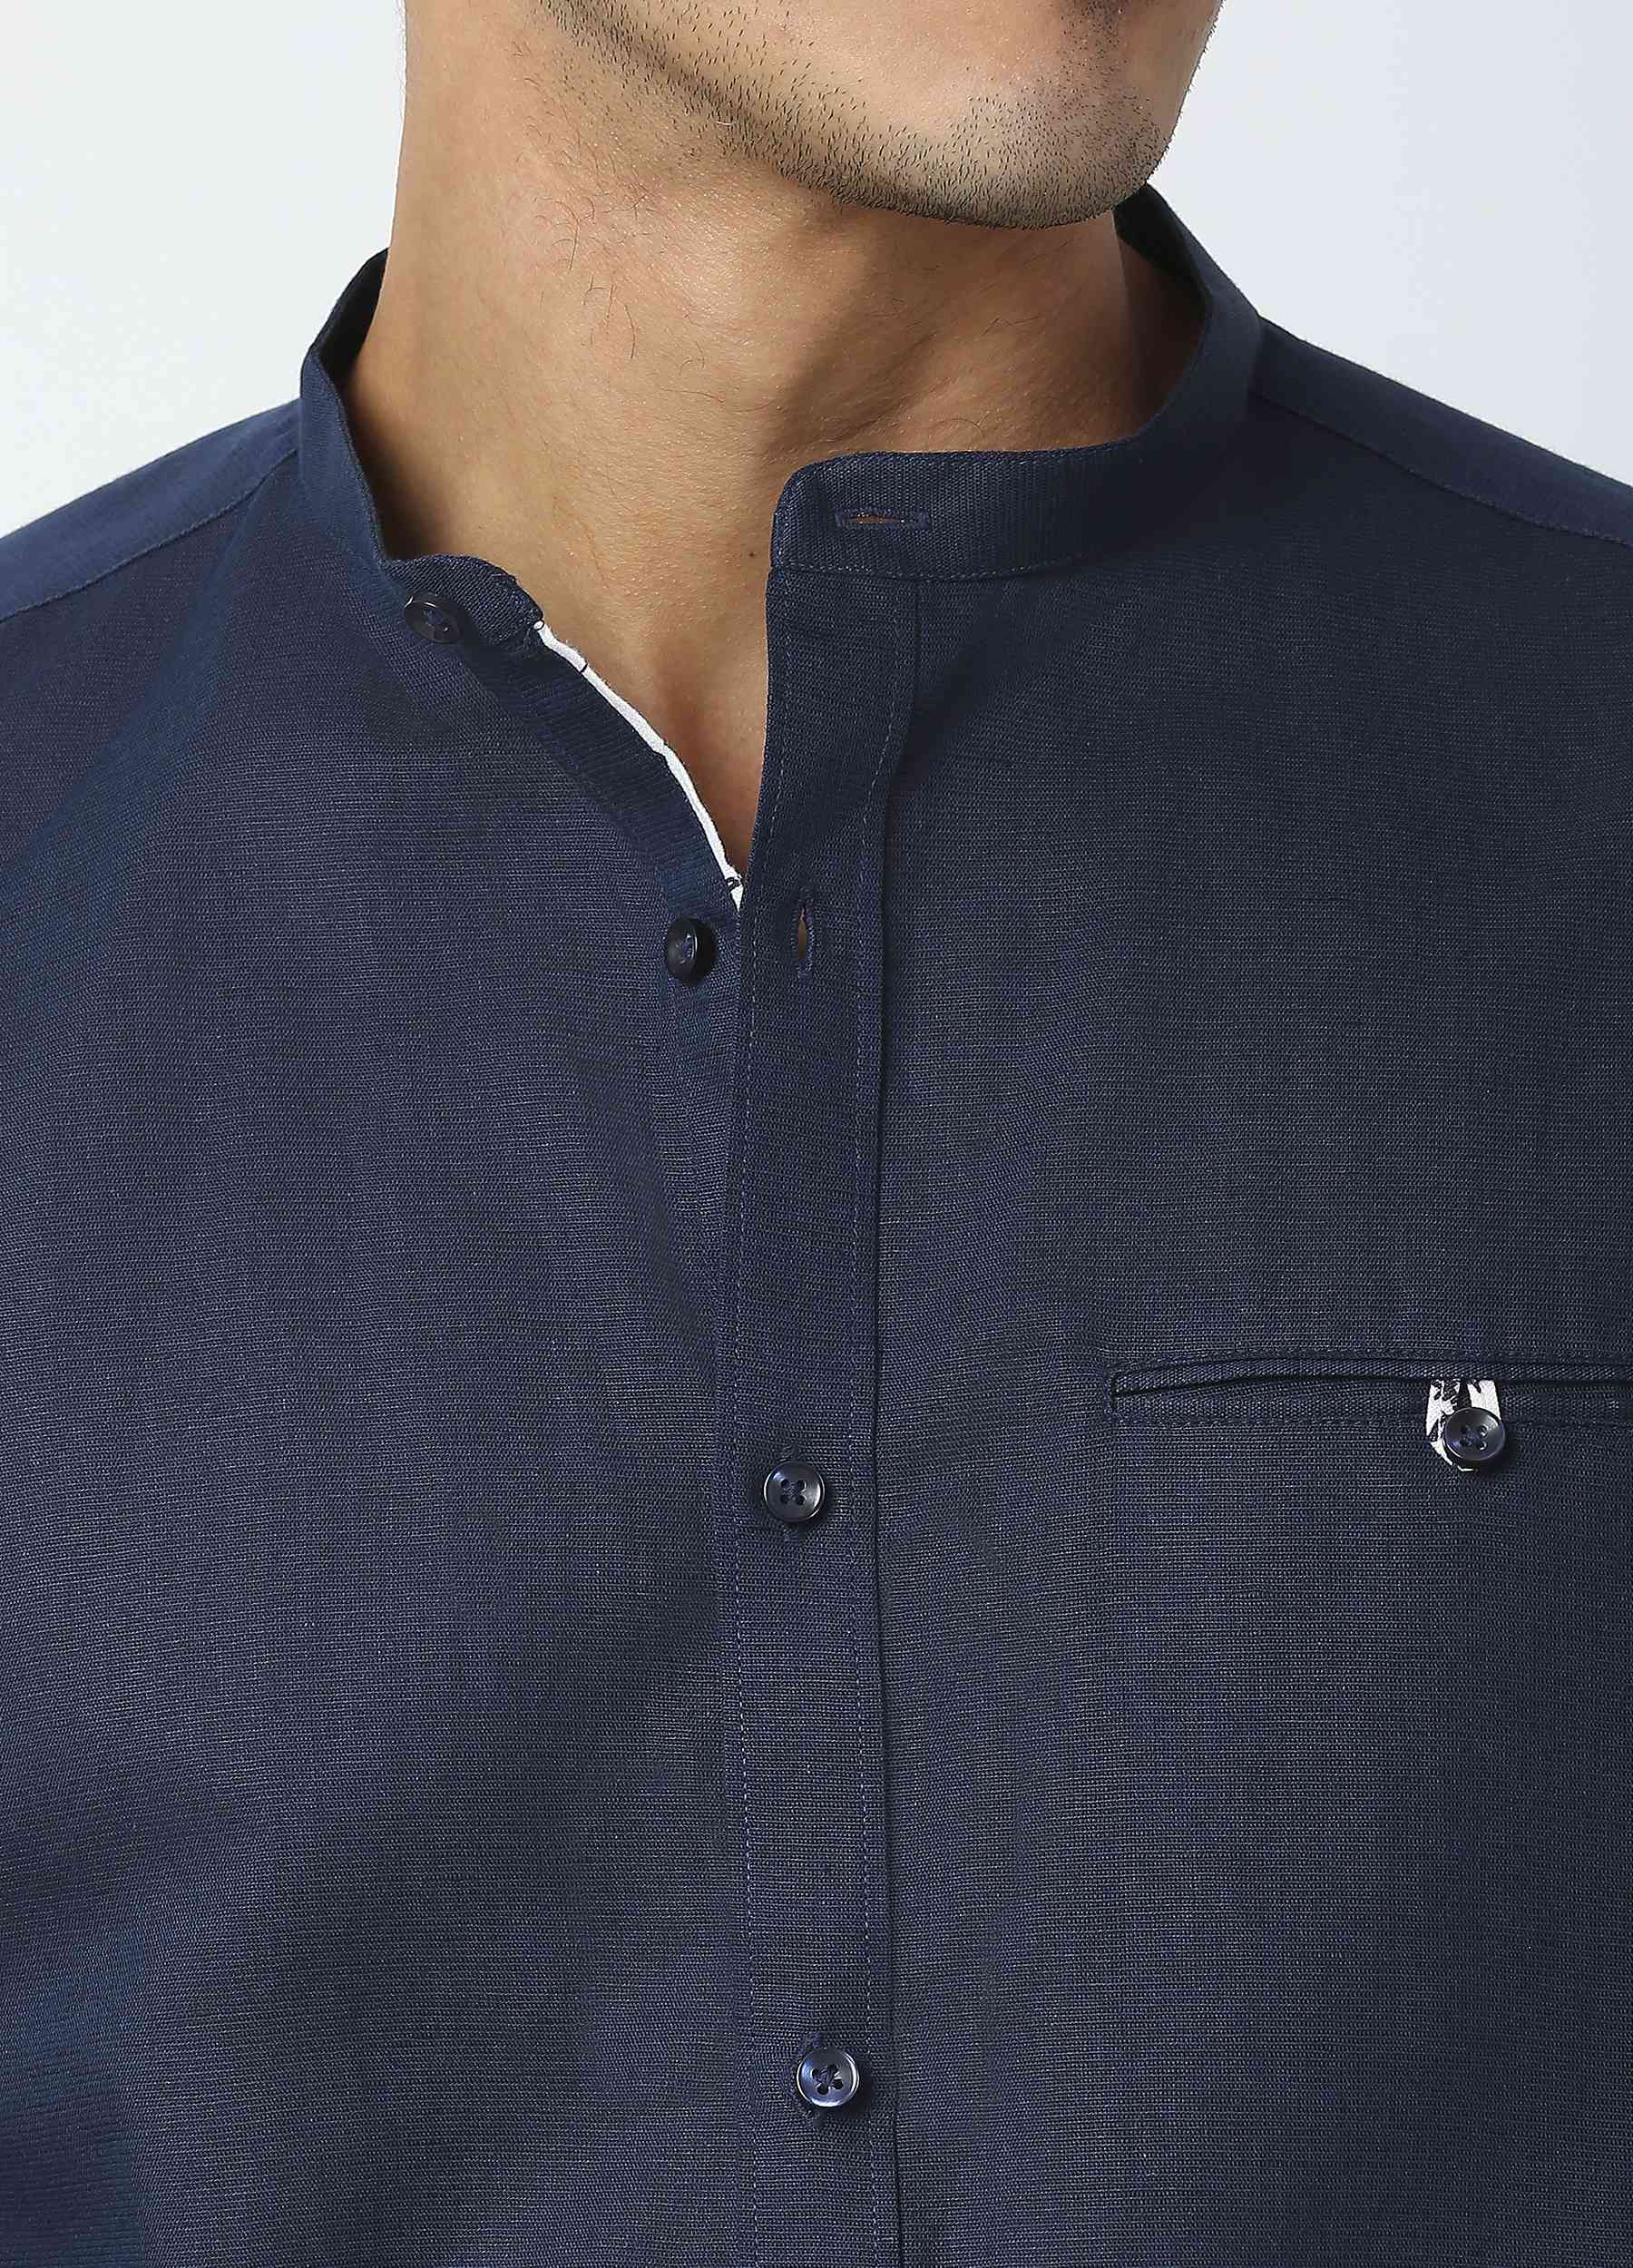 Band Collar Linen Blend Solid Shirt - Navy Blue